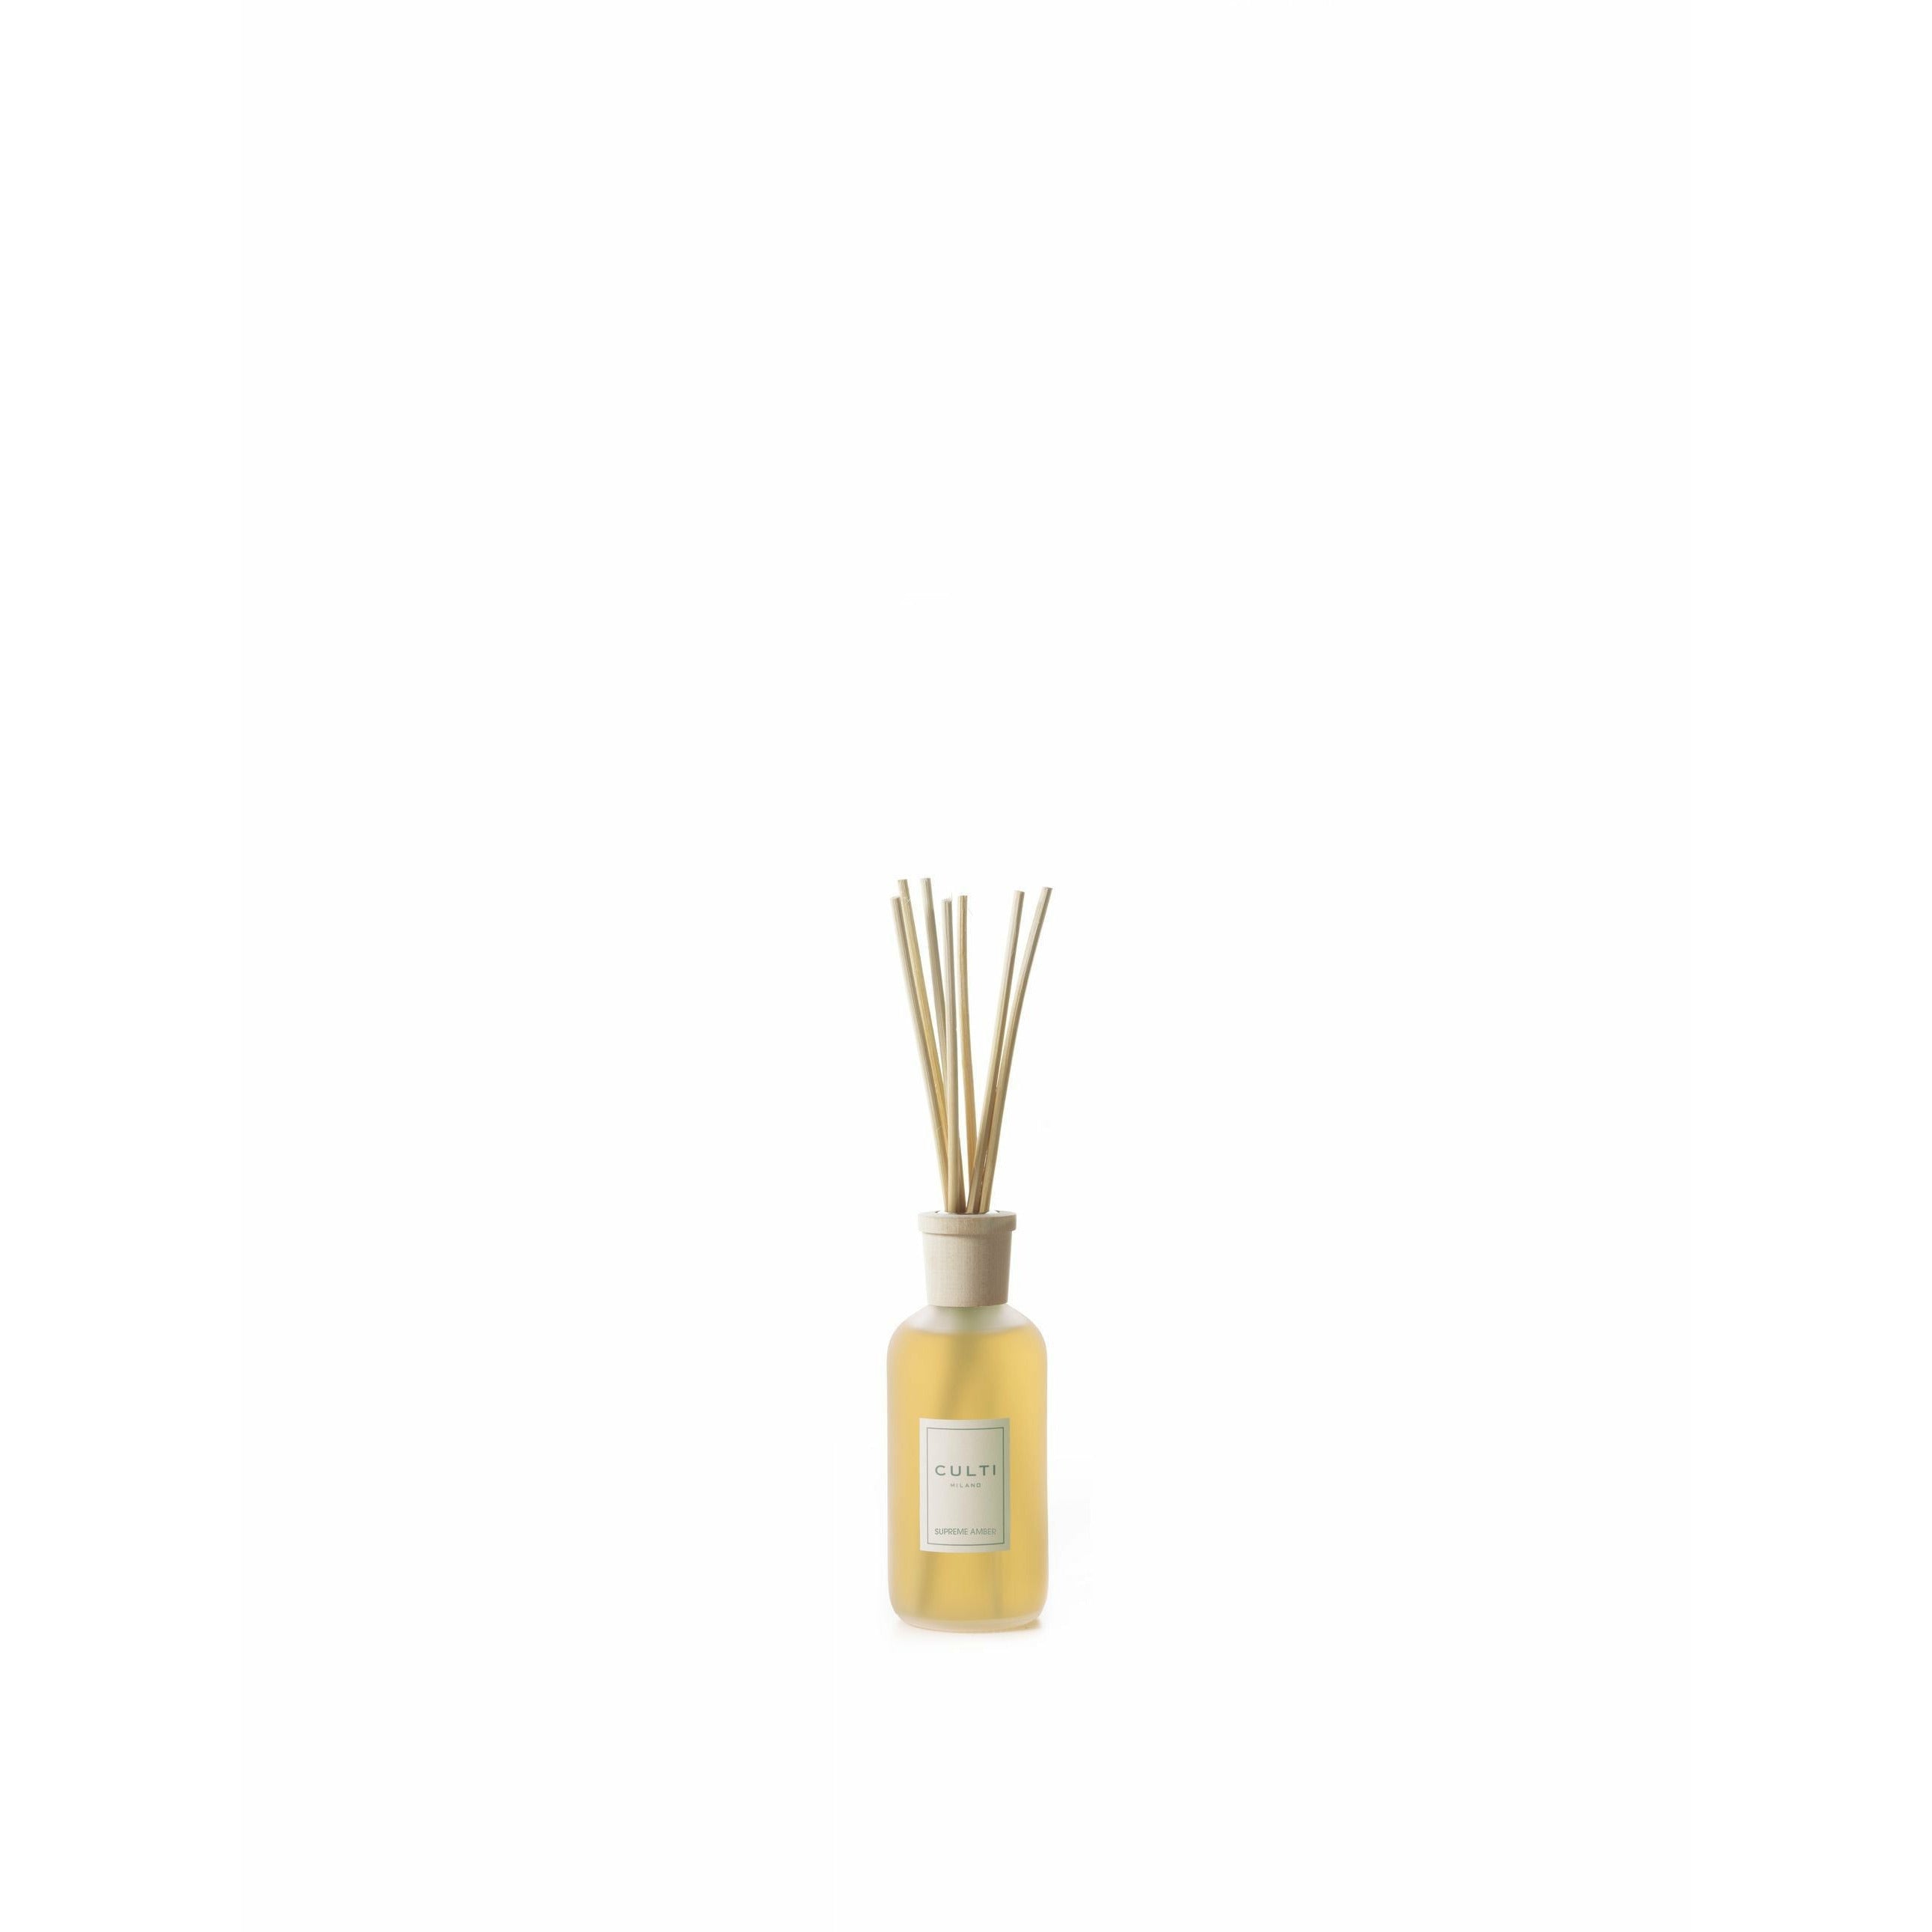 Culti Milano Stile Classic Fragrance Difuzor Supreme Amber, 250 ml